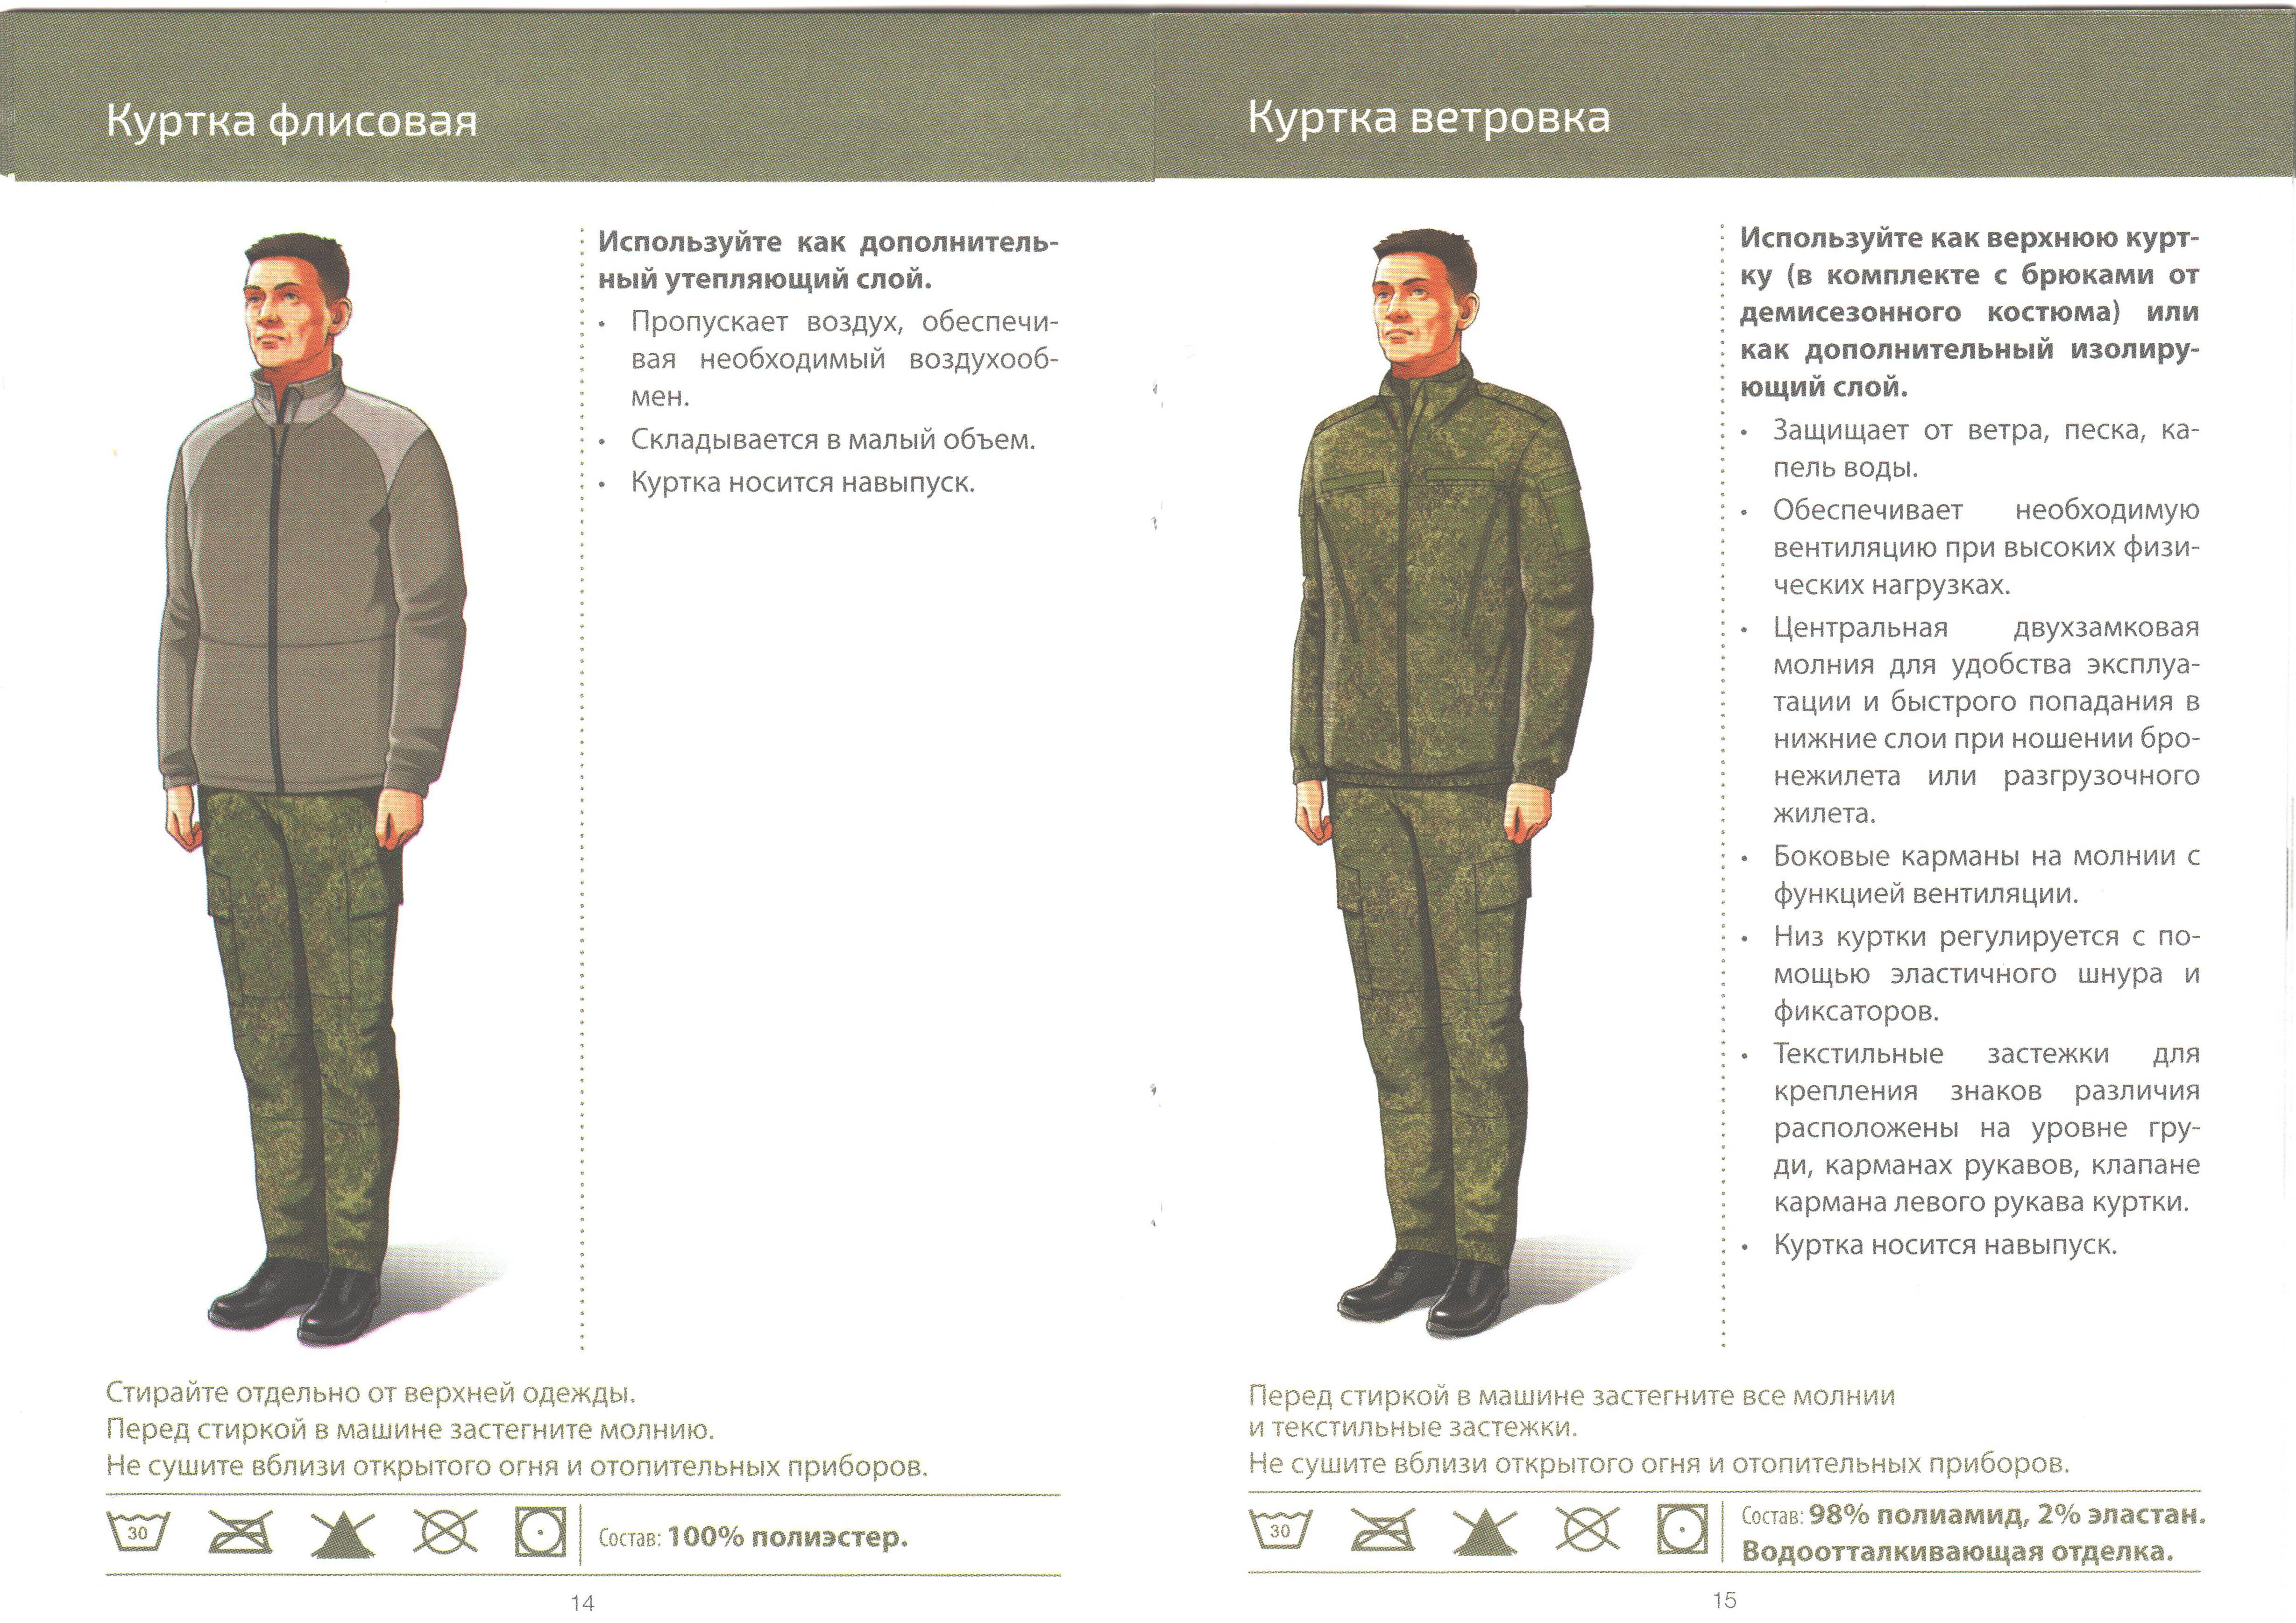 Военная форма российских военнослужащих вкпо и вкбо 2020, новые образцы парадного и полевого обмундирования вс, правила ношения в армии